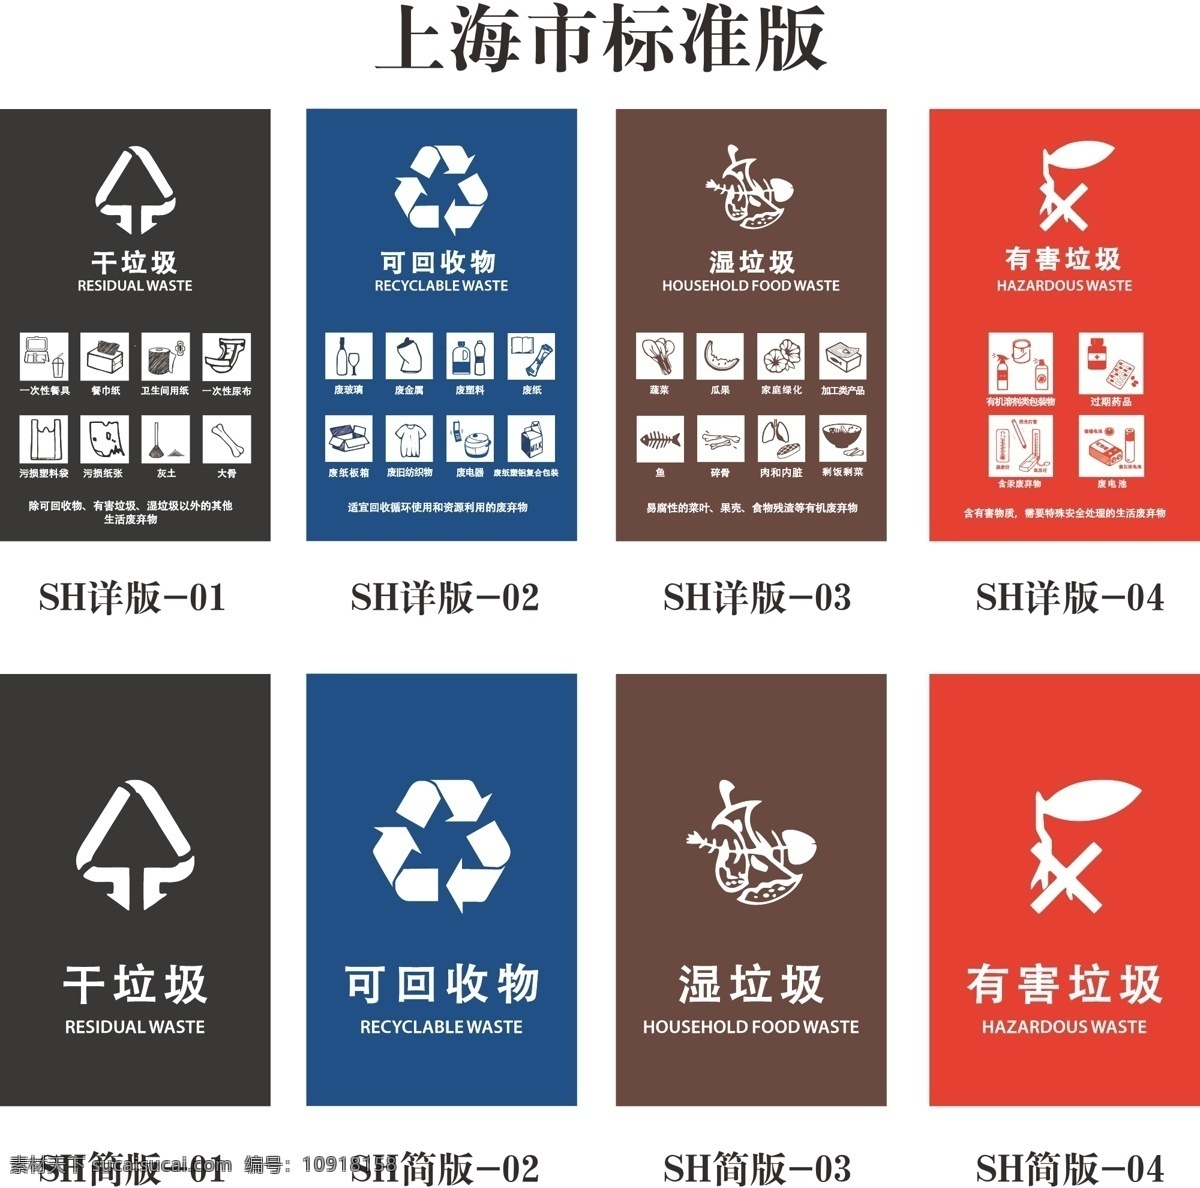 垃圾分类 垃圾分类桶贴 桶贴上海版 上海版 垃圾分类标贴